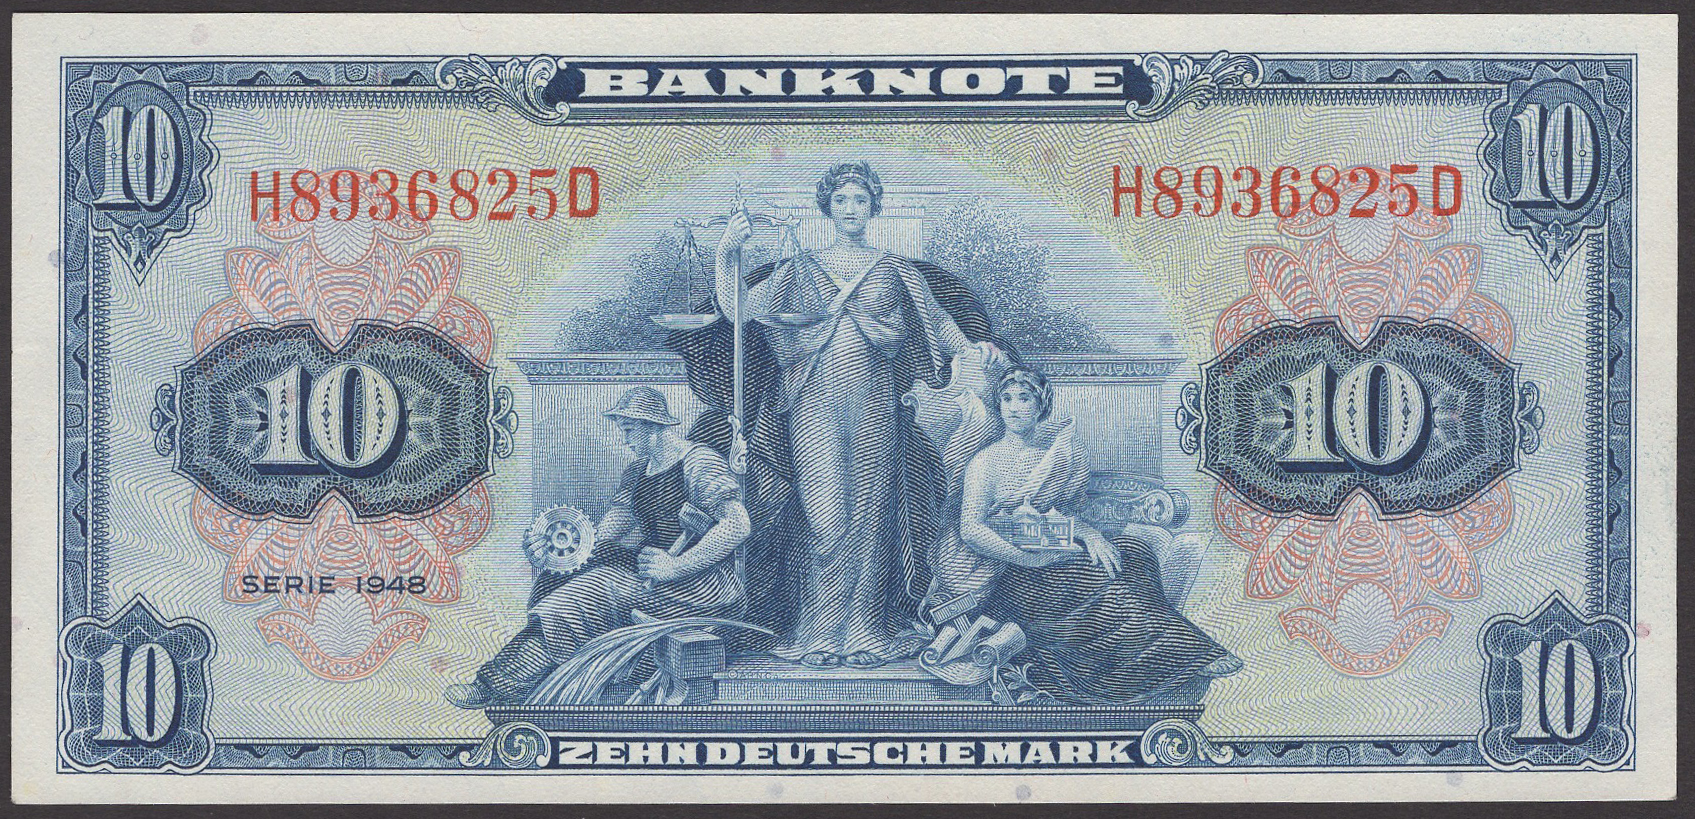 Bank Deutscher Lander, Allied Military Command, 10 Deutsche Mark, 1948, serial number...